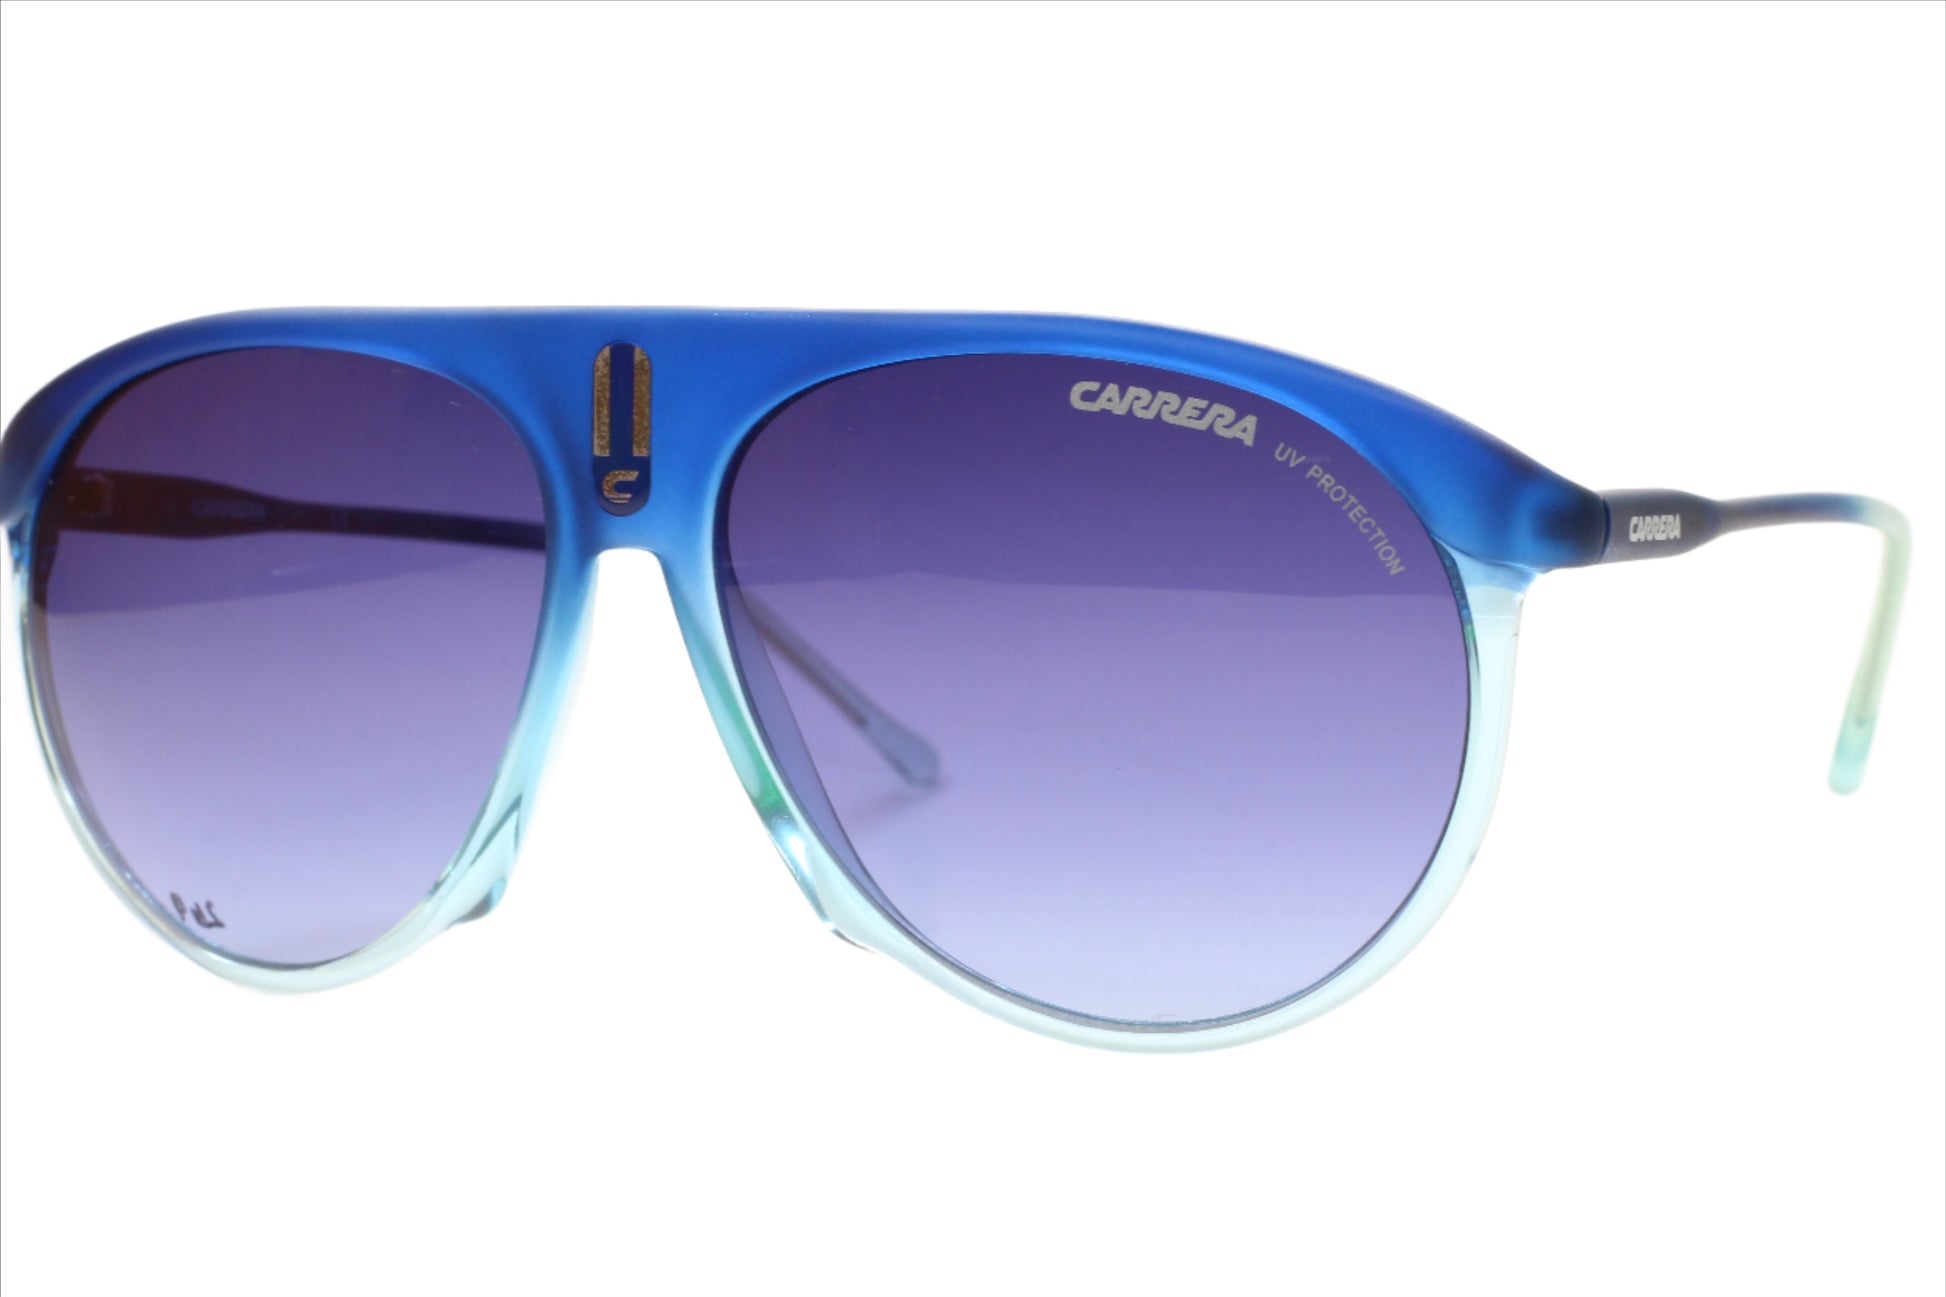 Carrera 29/S 0XAR Y5 Aqua Blue Gradient Pilot Luxury Sunglasses - ABC Optical